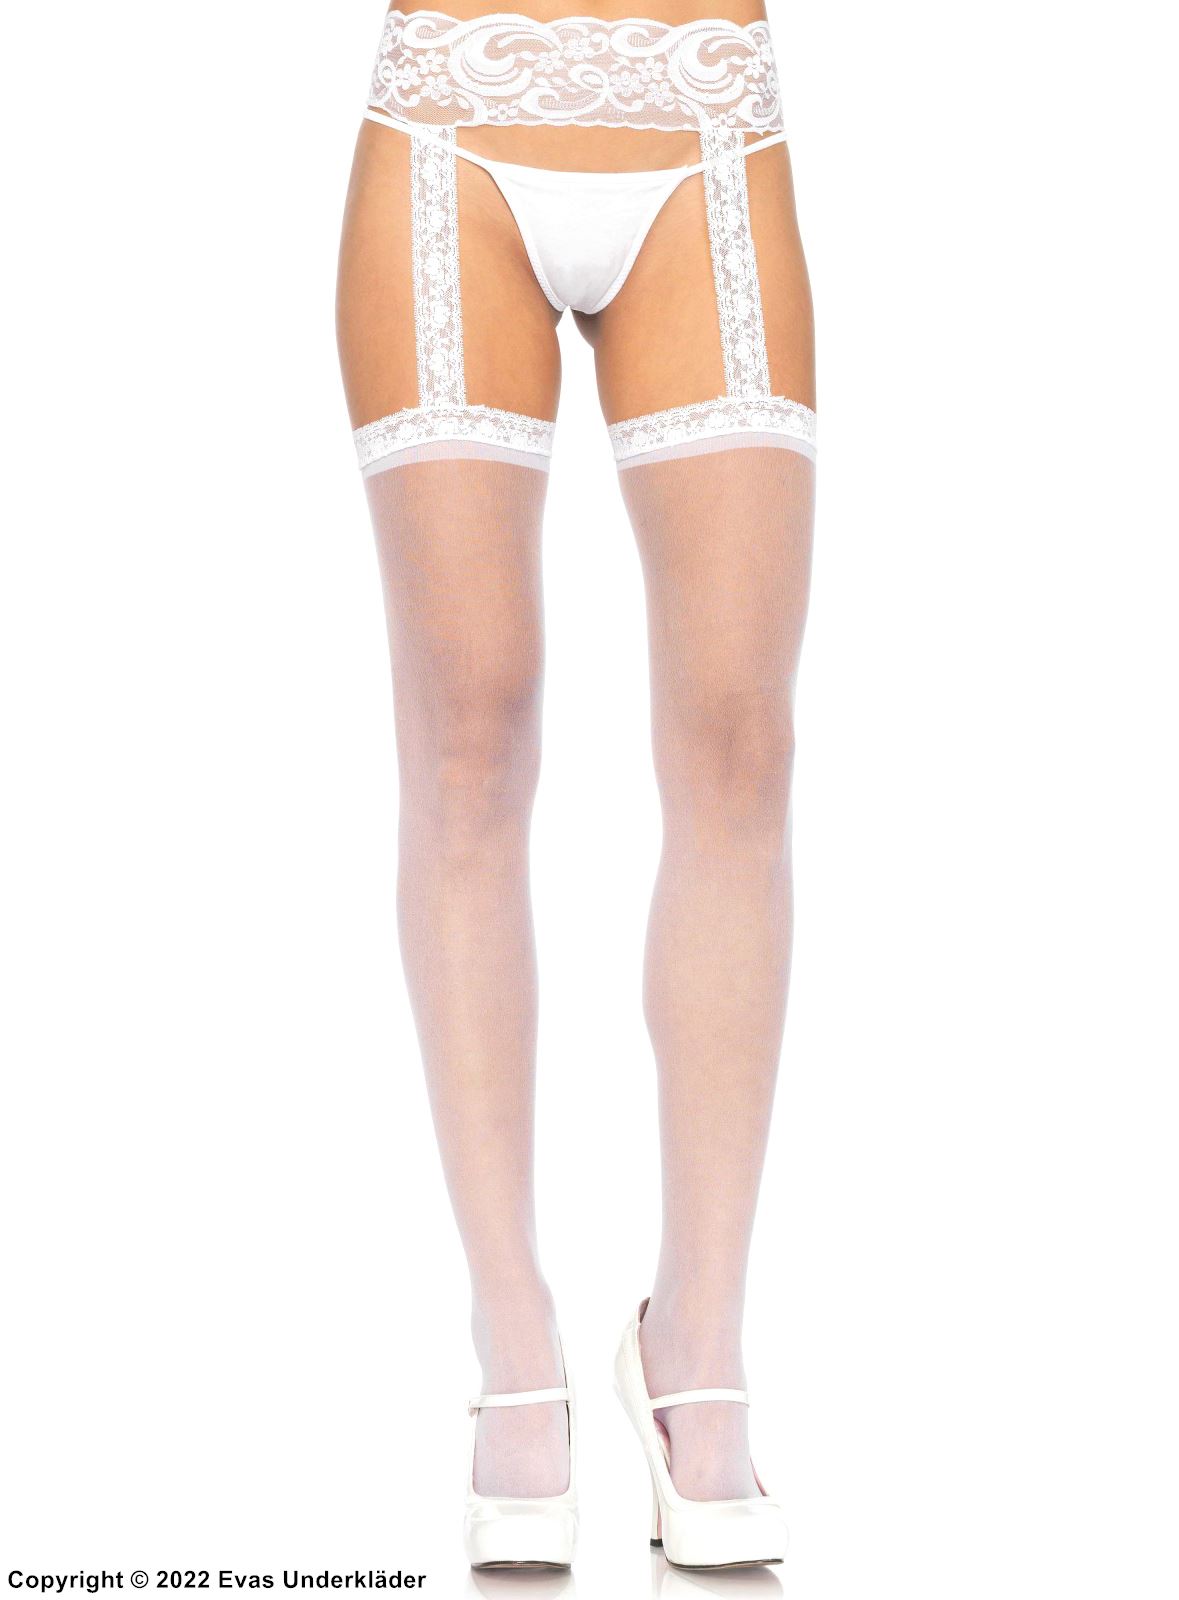 Suspender pantyhose, lace, built-in garter belt